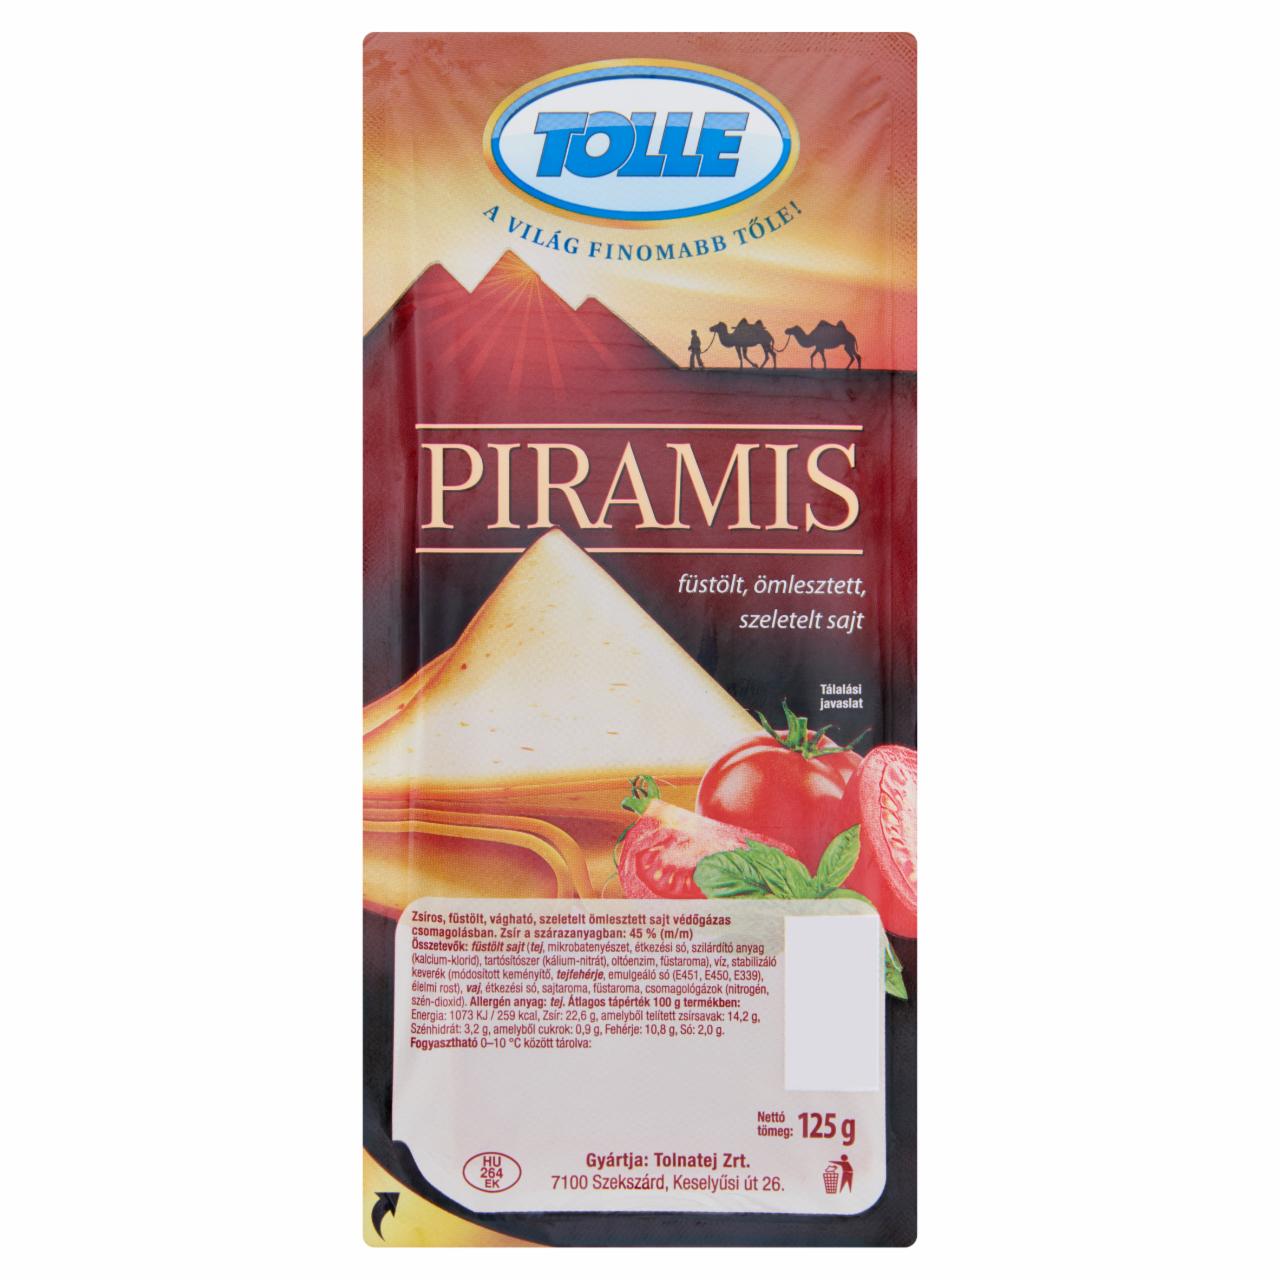 Képek - Tolle Piramis füstölt, ömlesztett, szeletelt sajt 125 g